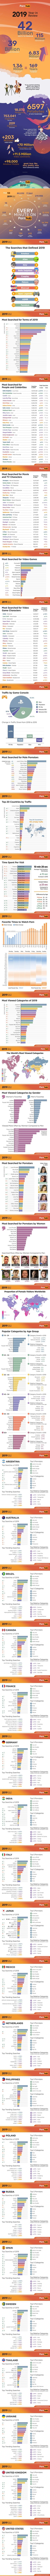 Les statistiques PornHub de 2019